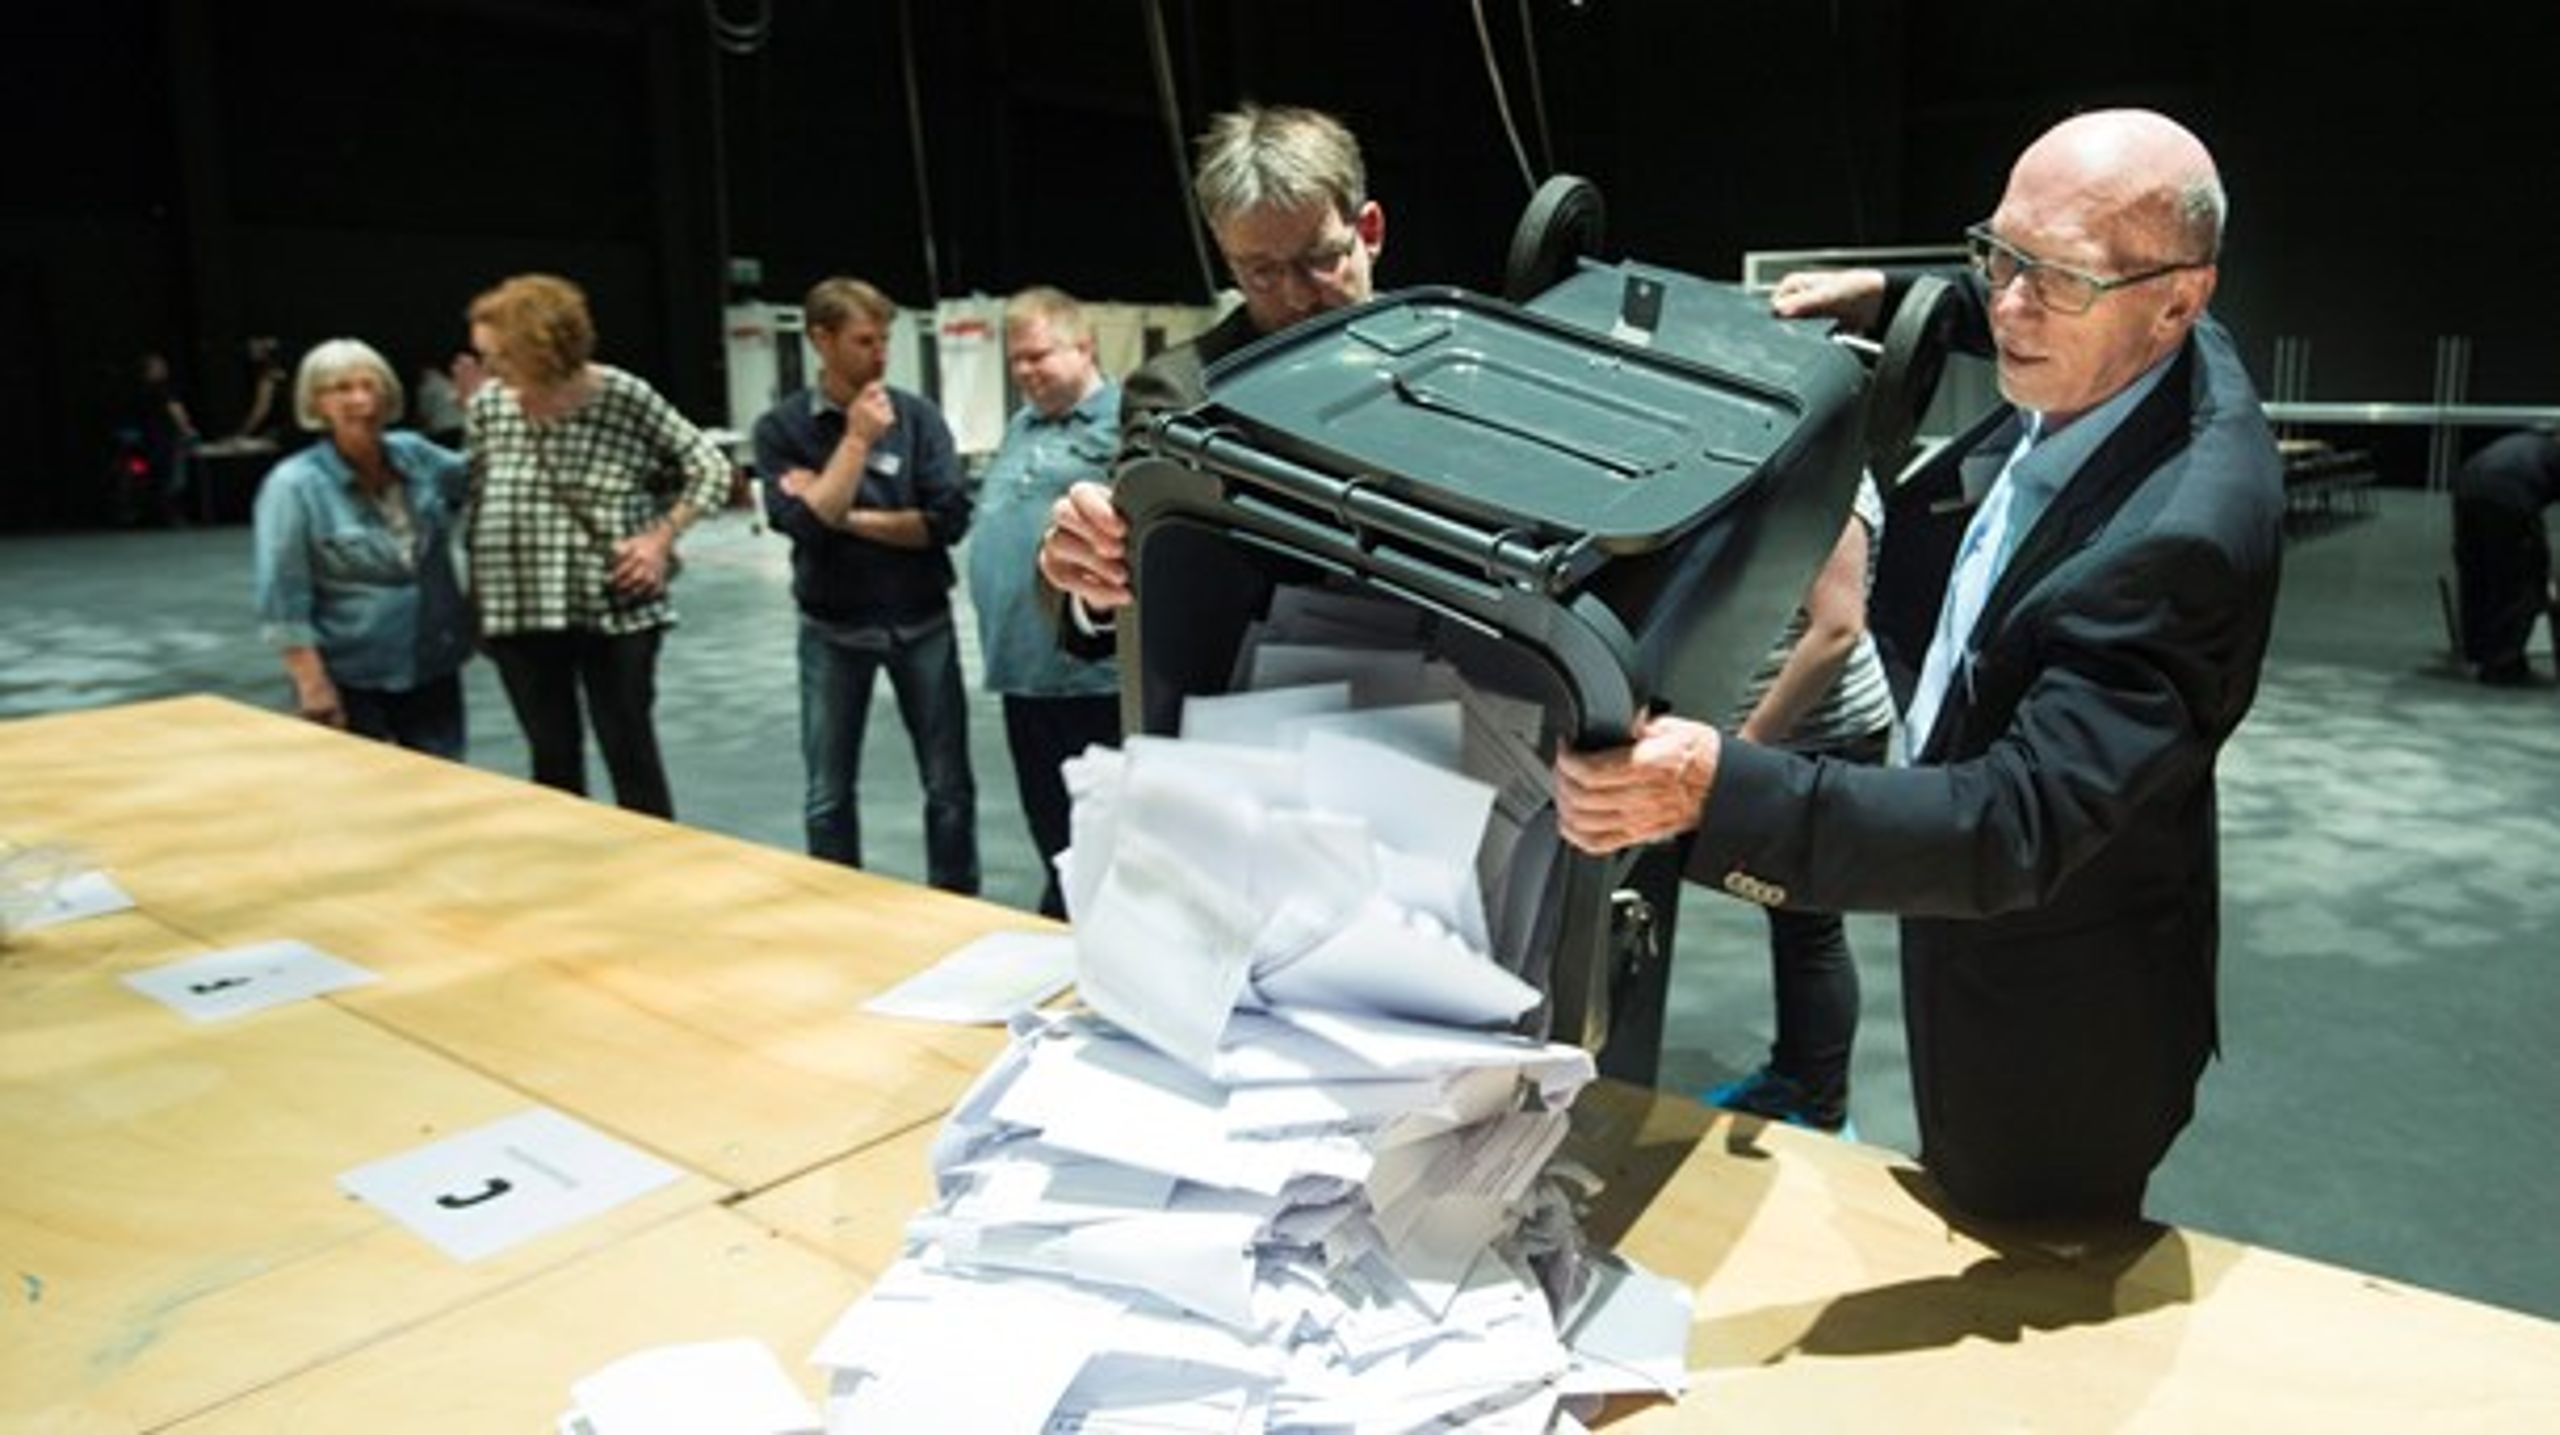 En tredjedel af vælgerne ved kommunalvalget i 2013 stemte udelukkende efter landspolitiske overvejelser, viser ny forskning.